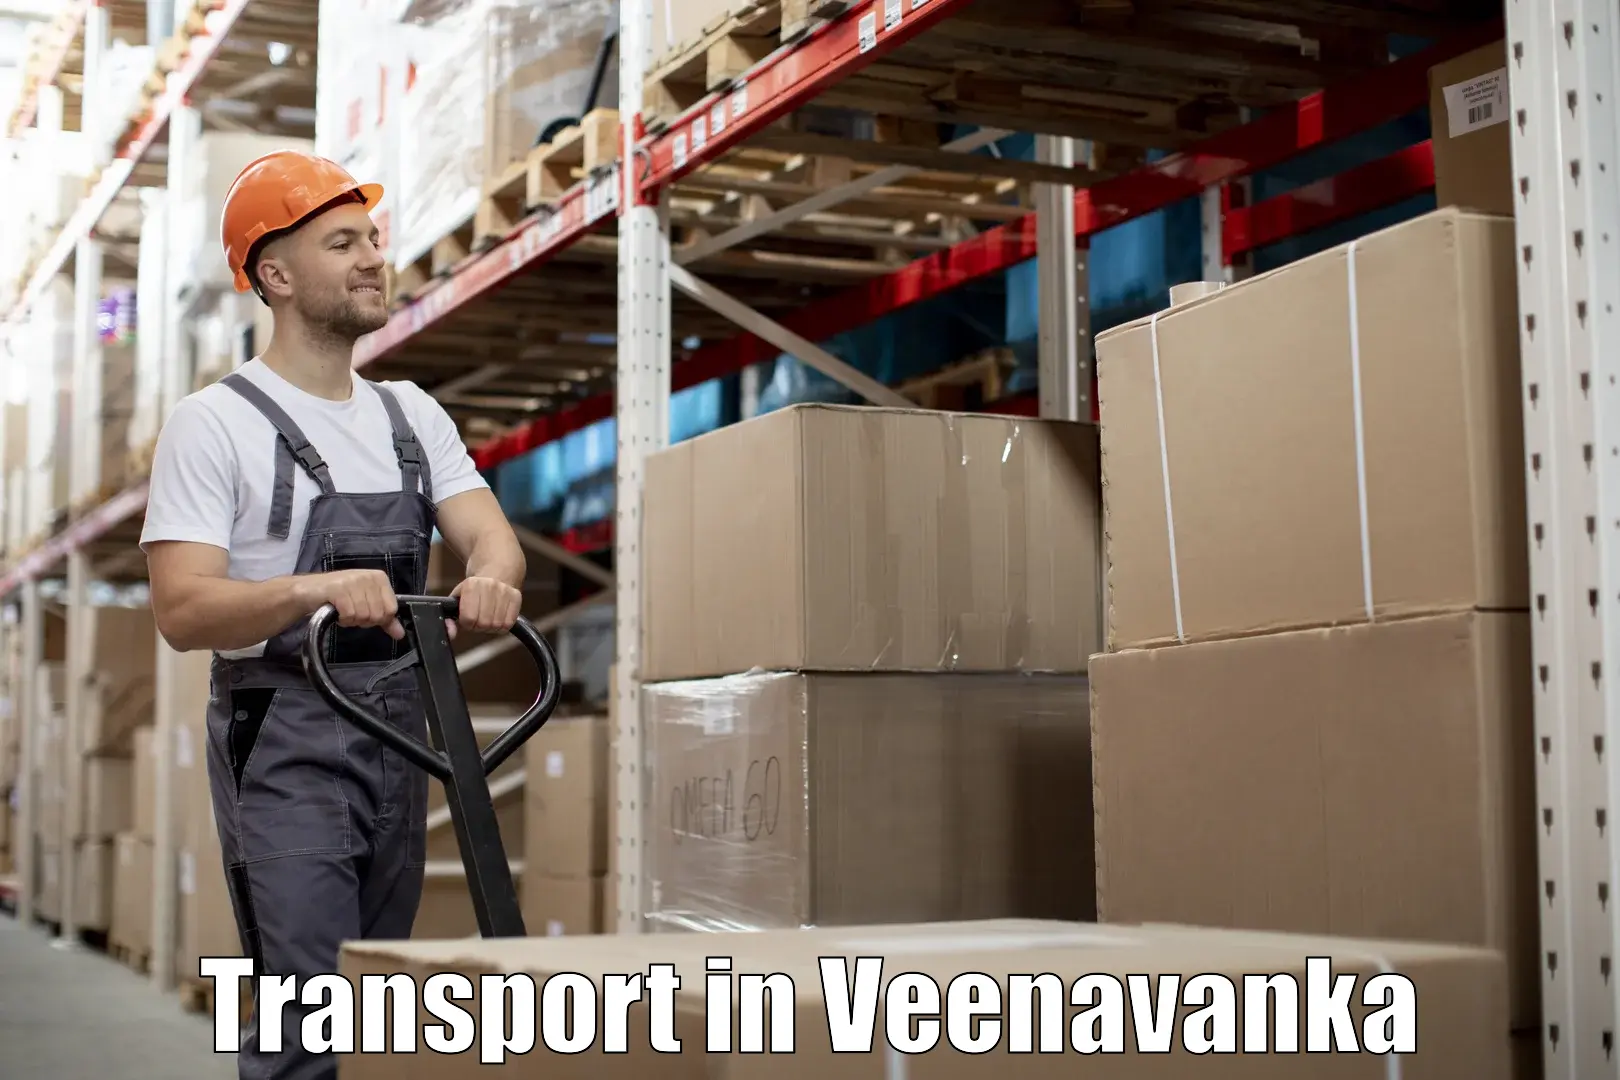 Vehicle courier services in Veenavanka